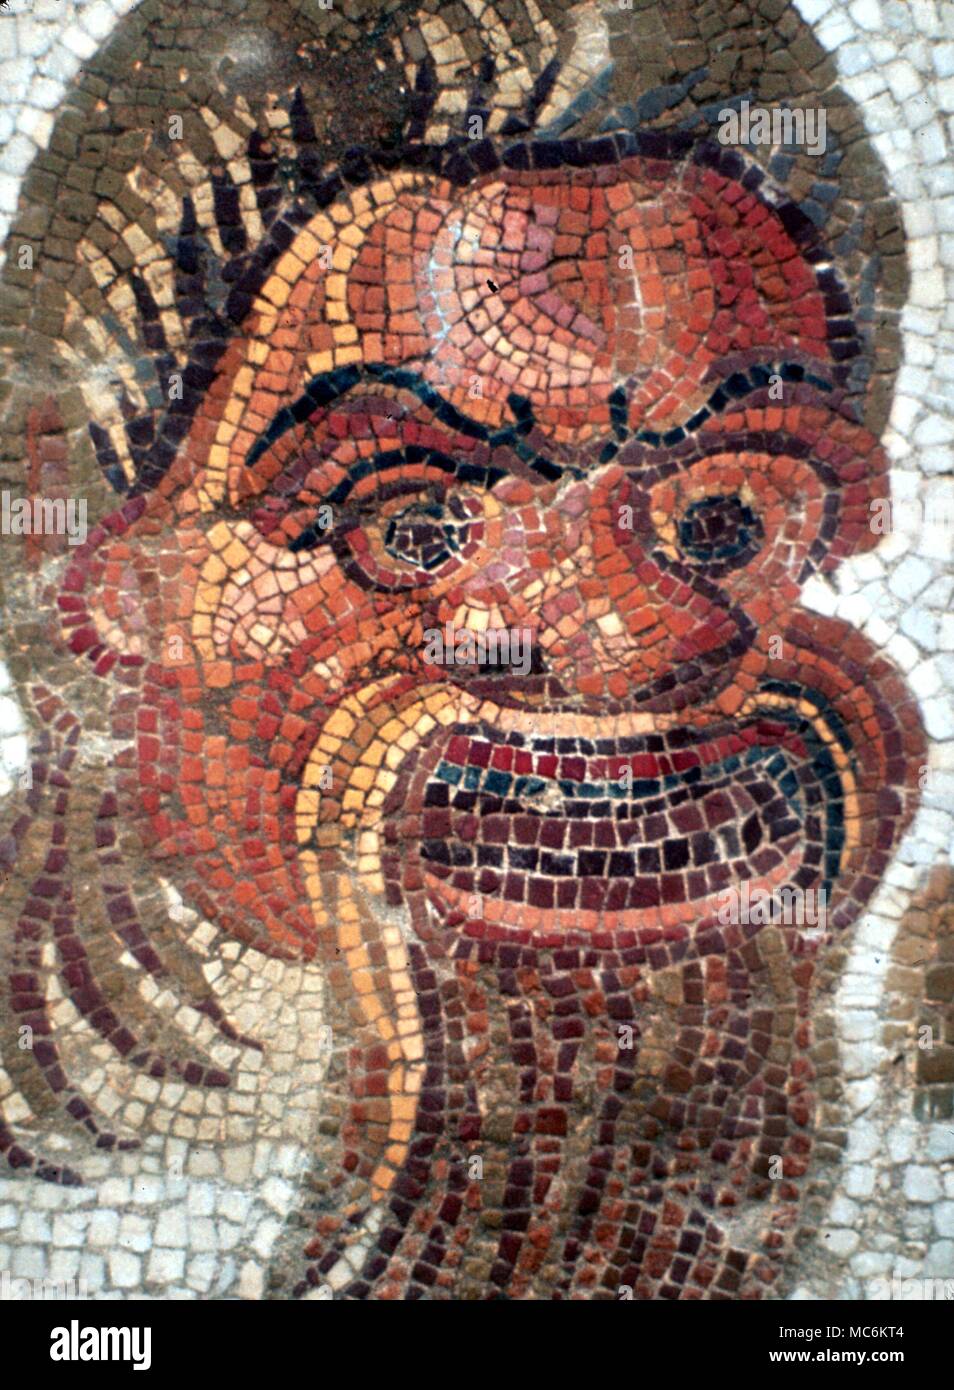 Les masques. Mosaïque de masque de tragédie grecque, à partir d'une ancienne chaussée grec près de Argos, Grèce. Banque D'Images